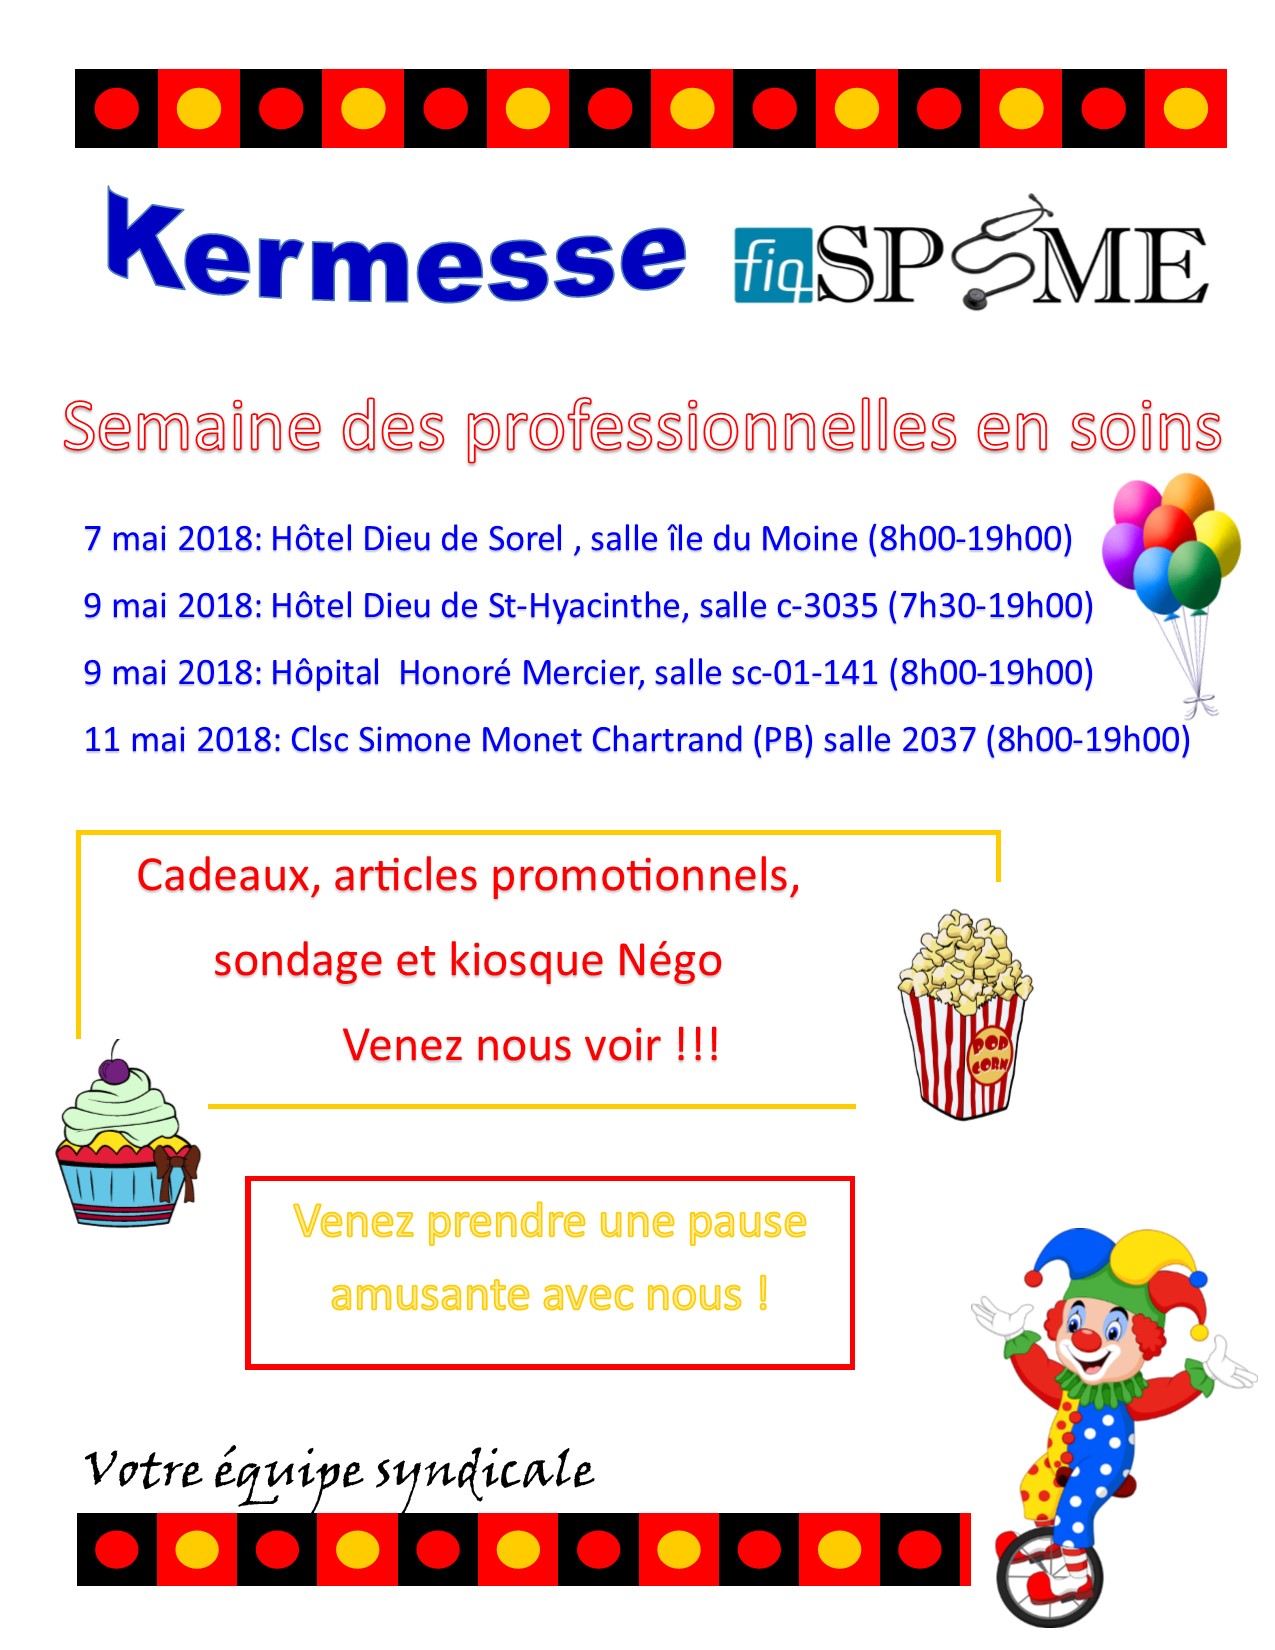 Kermesse FiqSPSME pour la semaine des professionnelles en soins